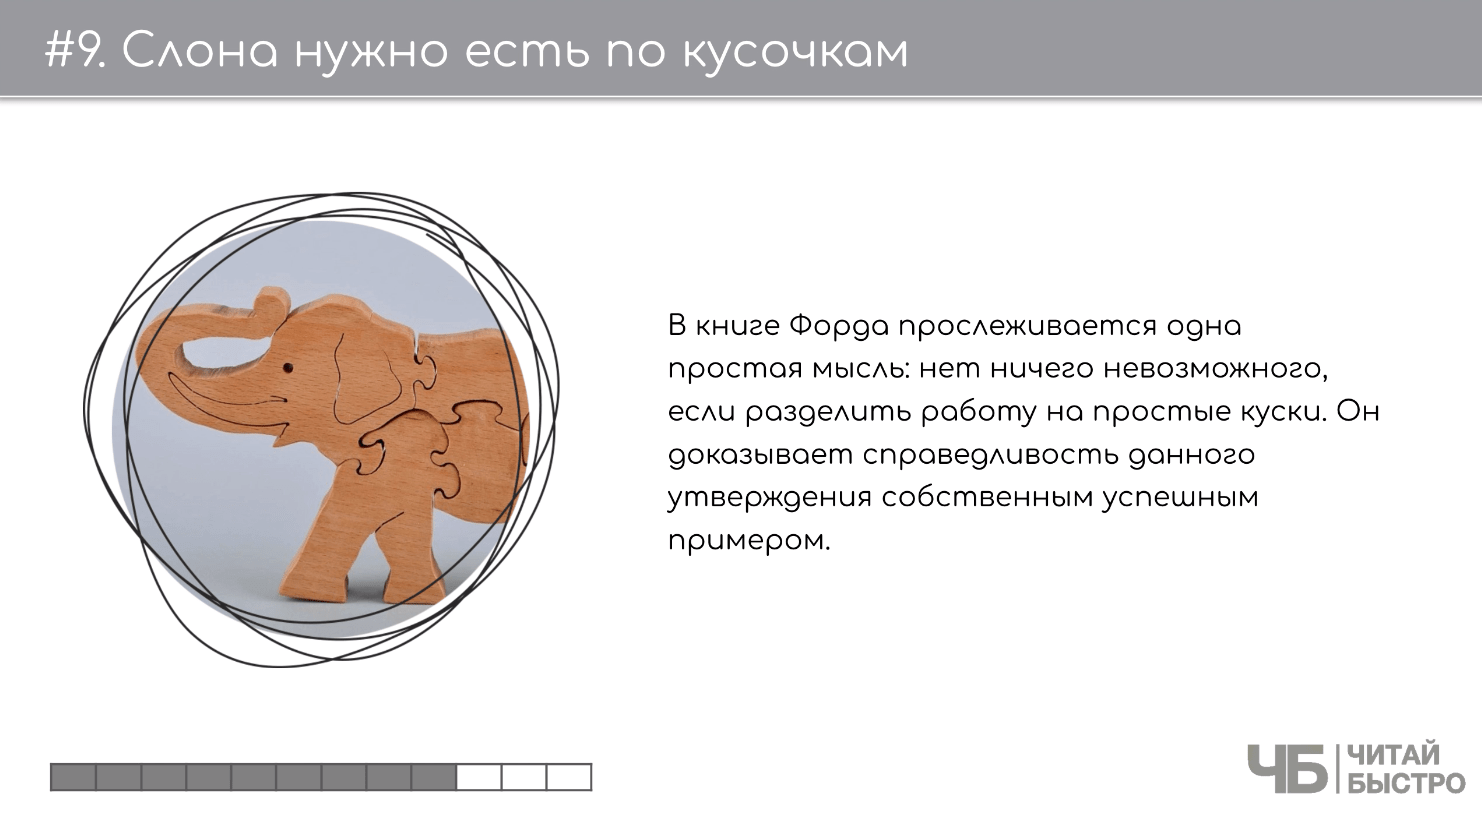 На этом слайде изображен тезис о том, что слона нужно есть по кусочкам и иллюстрация деревянного слона.